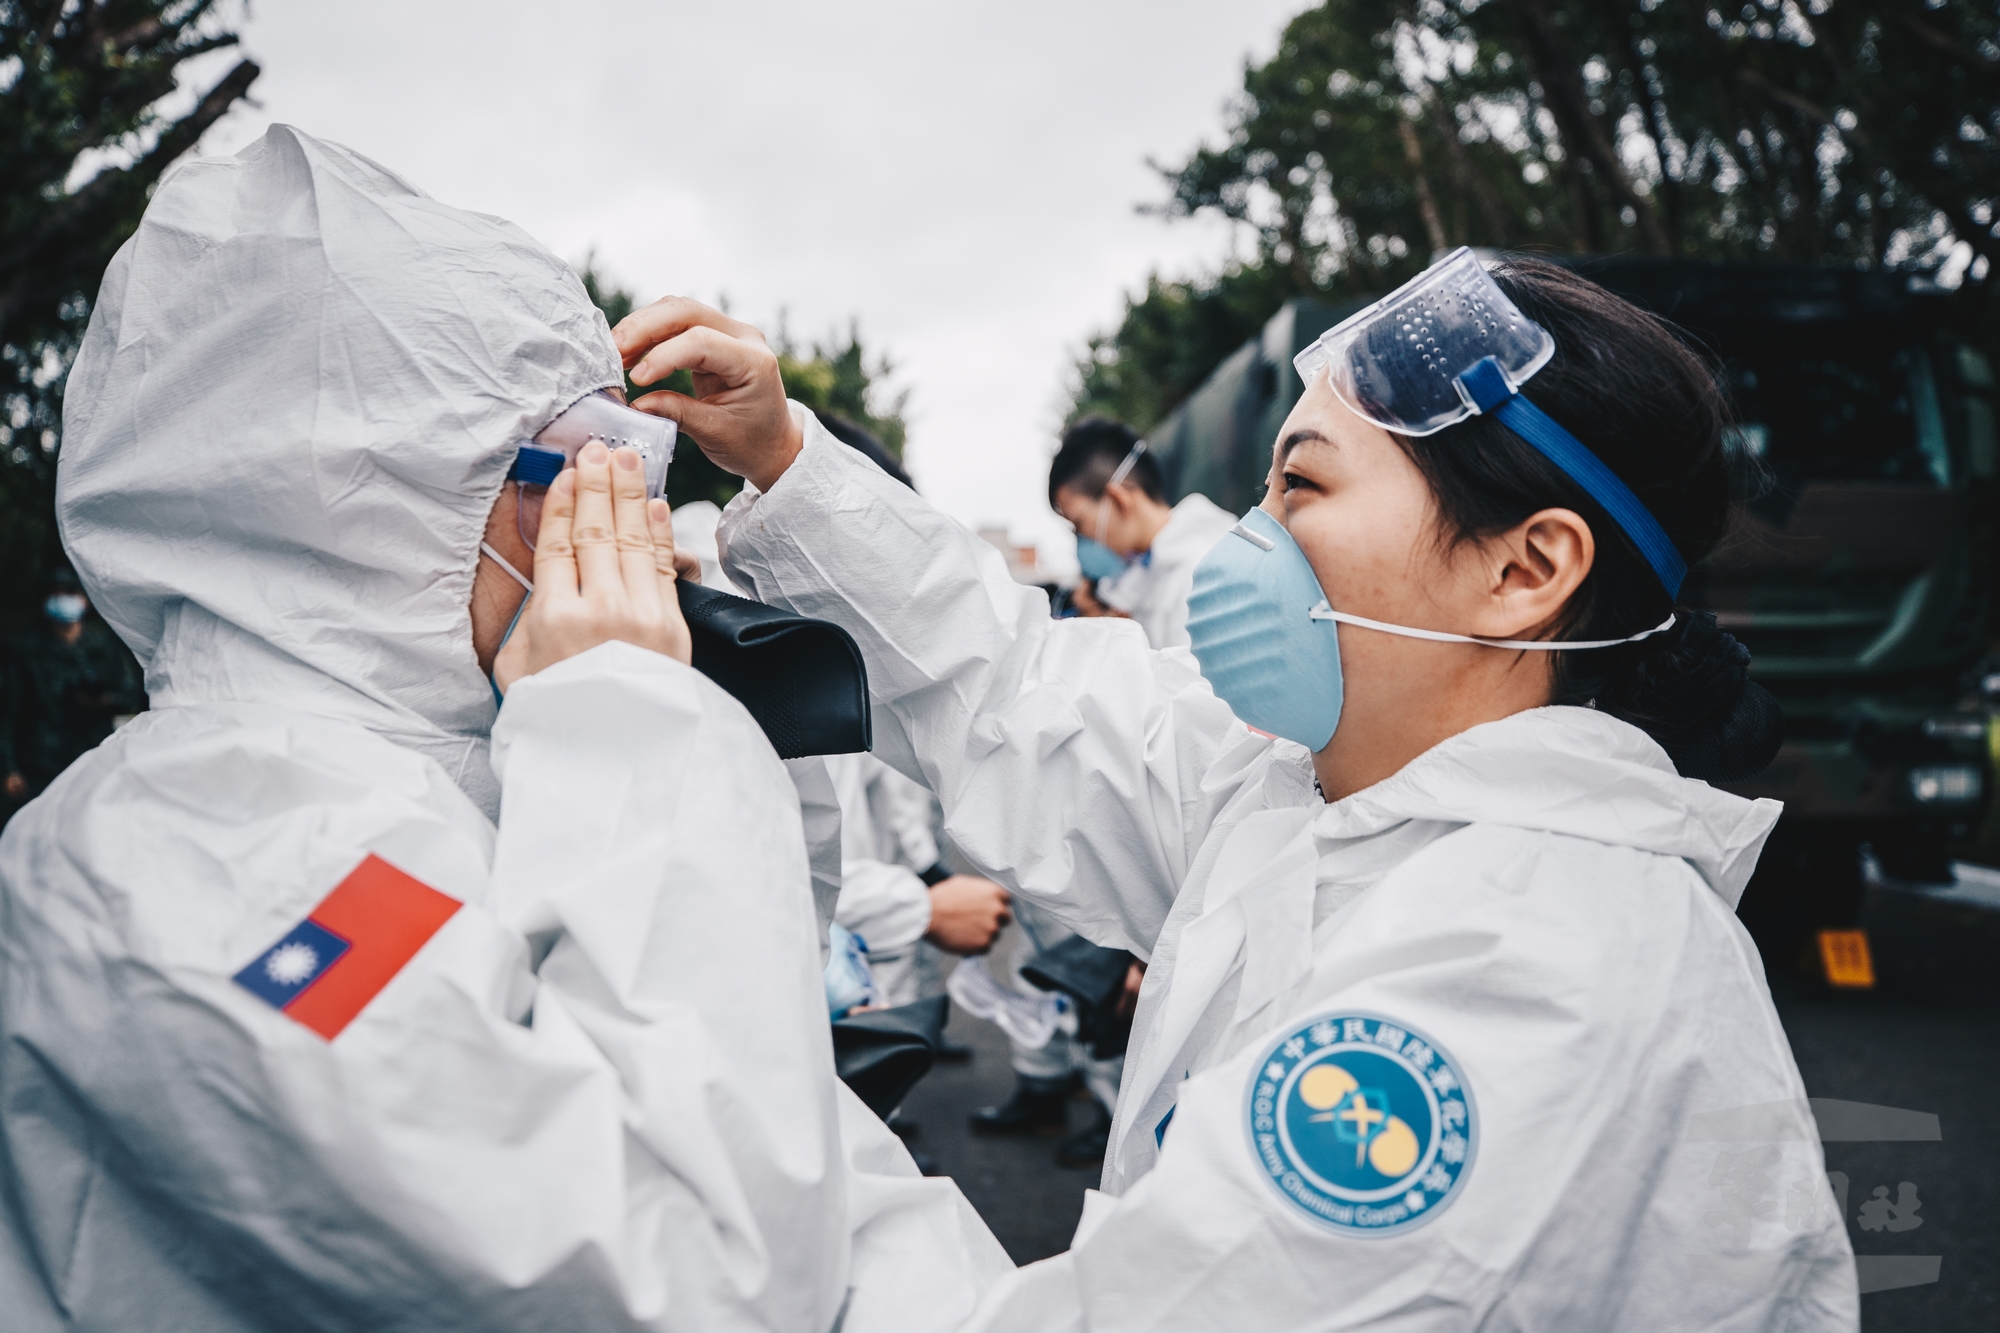 À Taïwan, le 33e régiment de protection biologique et chimique de l'armée de terre a été fréquemment sollicité pour réaliser de vastes opérations de désinfection contre la diffusion du coronavirus. (Crédit : Chen Jun-yun, Military News Agency, libre de droits)